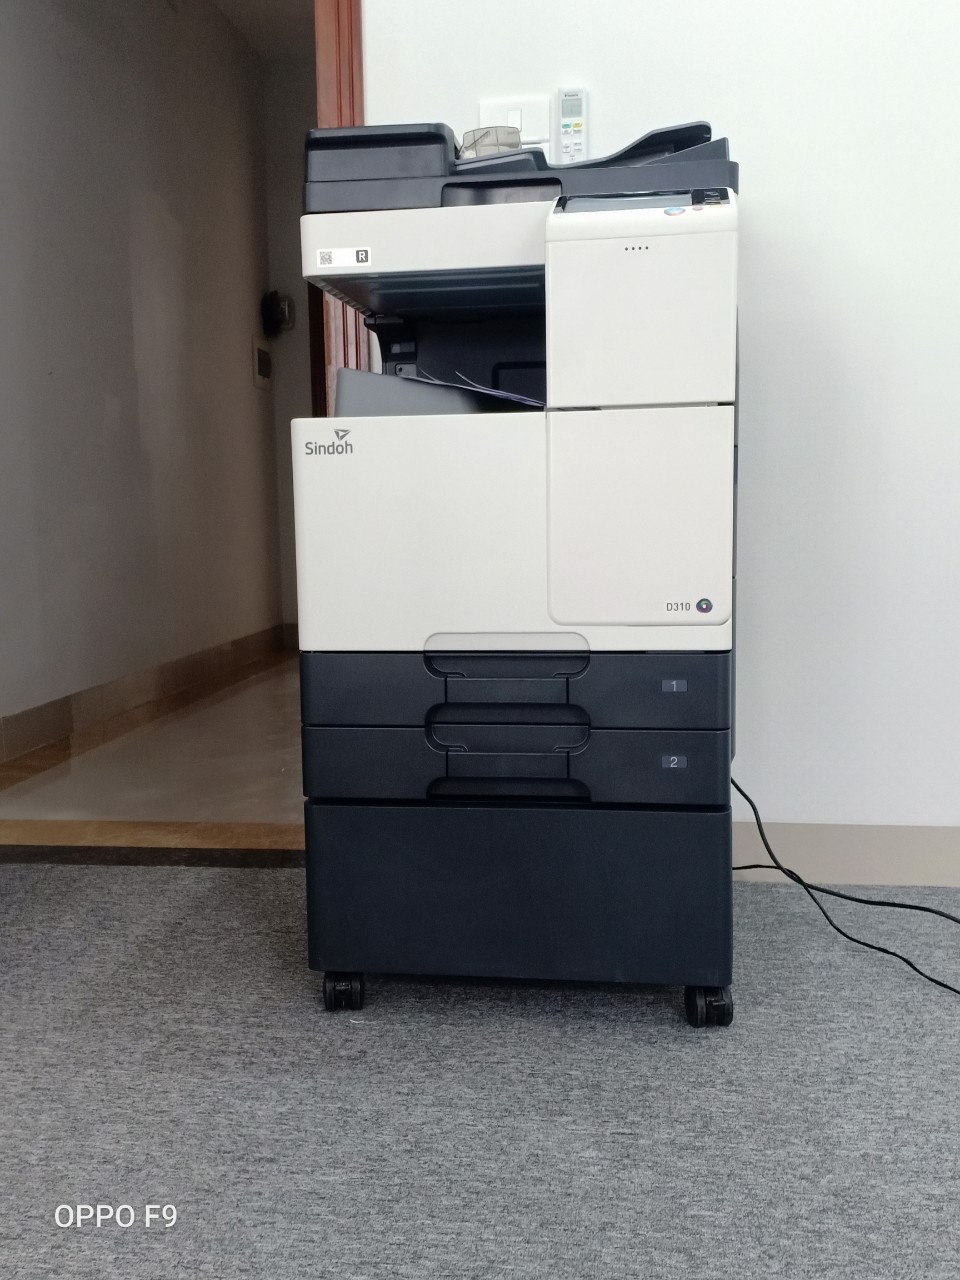 Máy Photocopy SINDOH D310 tại công ty Hàn Quốc- Khách hàng của TC Group